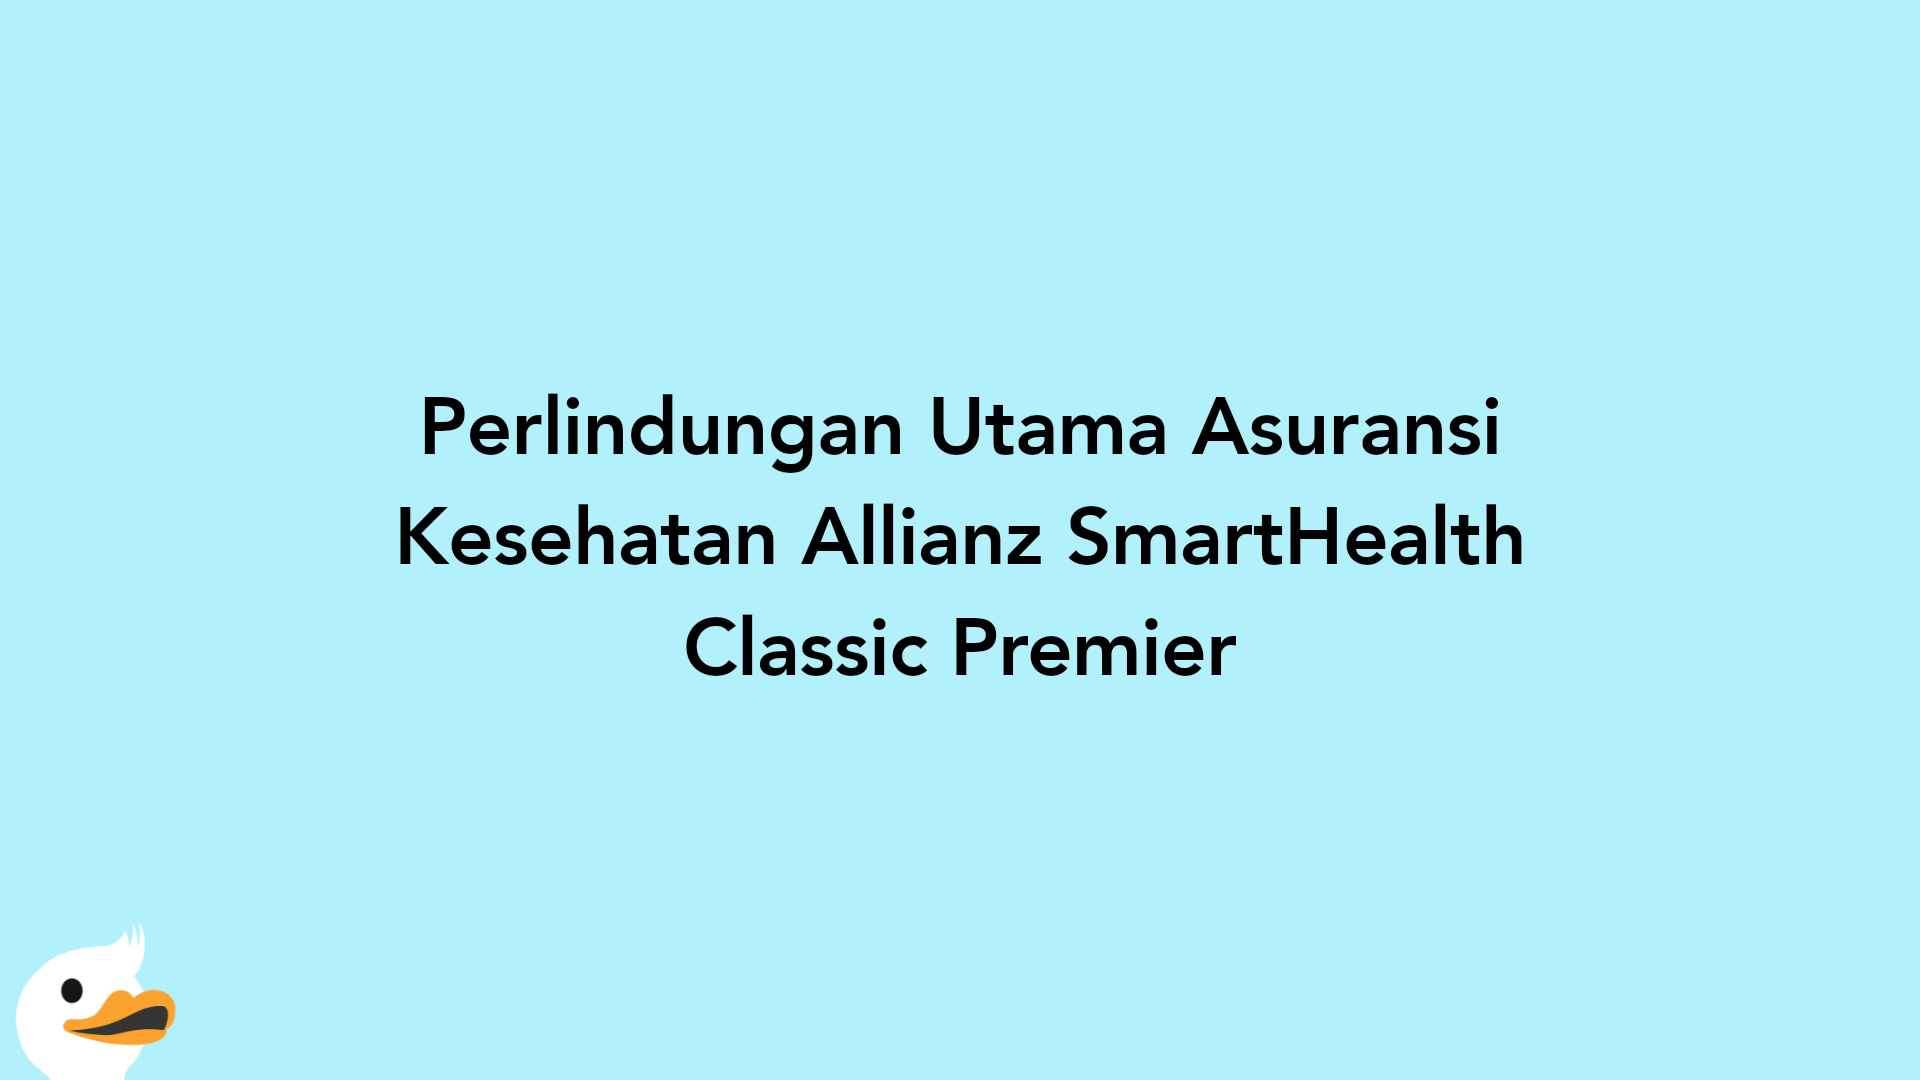 Perlindungan Utama Asuransi Kesehatan Allianz SmartHealth Classic Premier